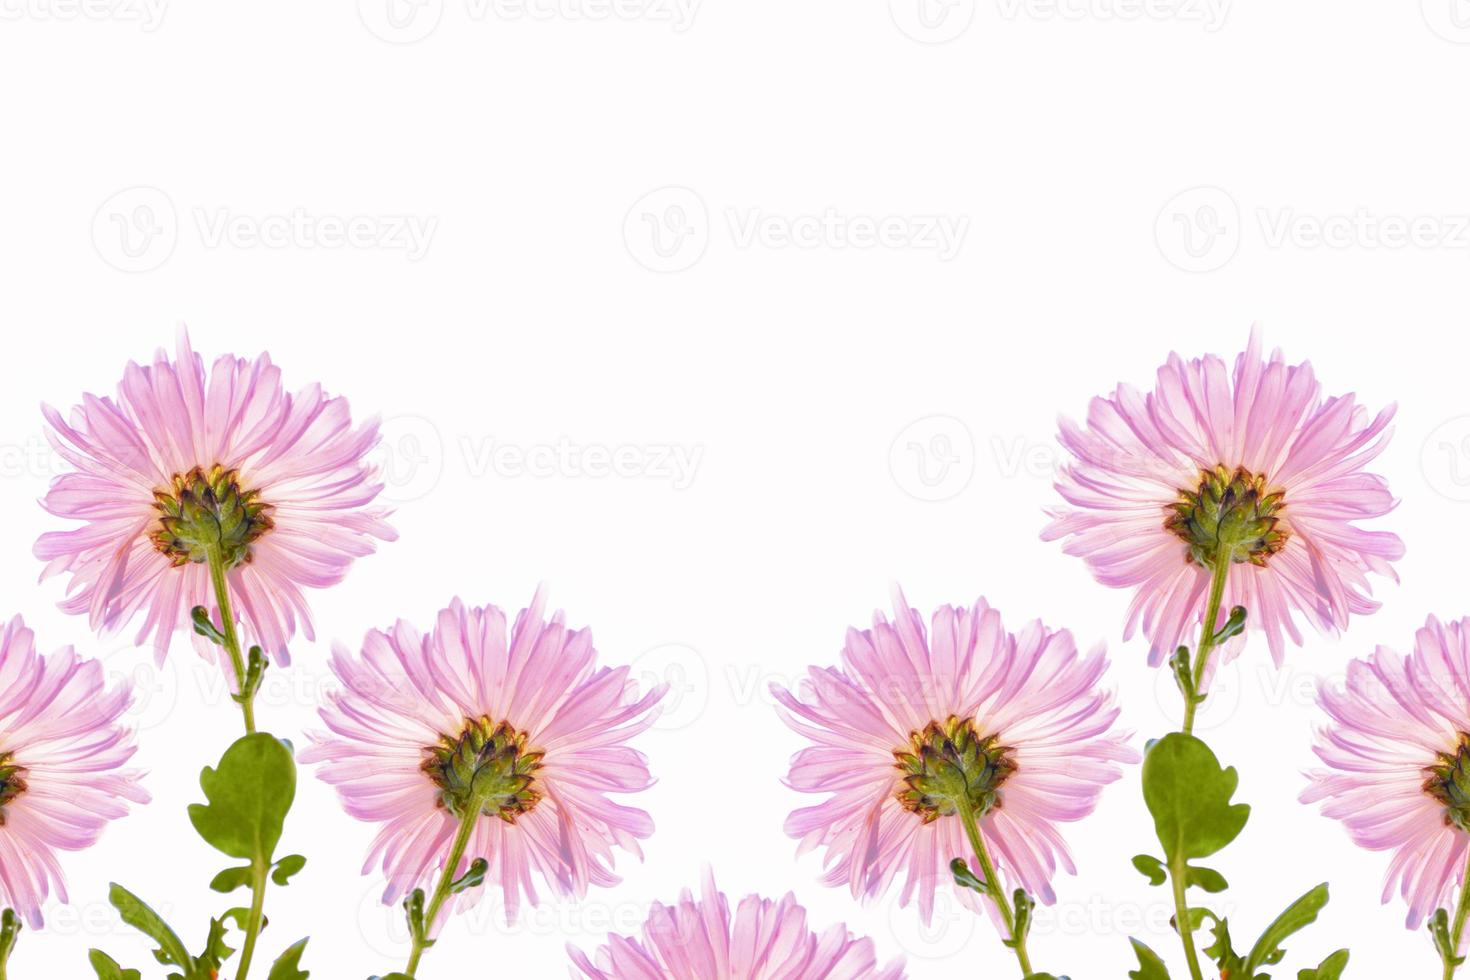 fiori autunnali colorati di crisantemo foto